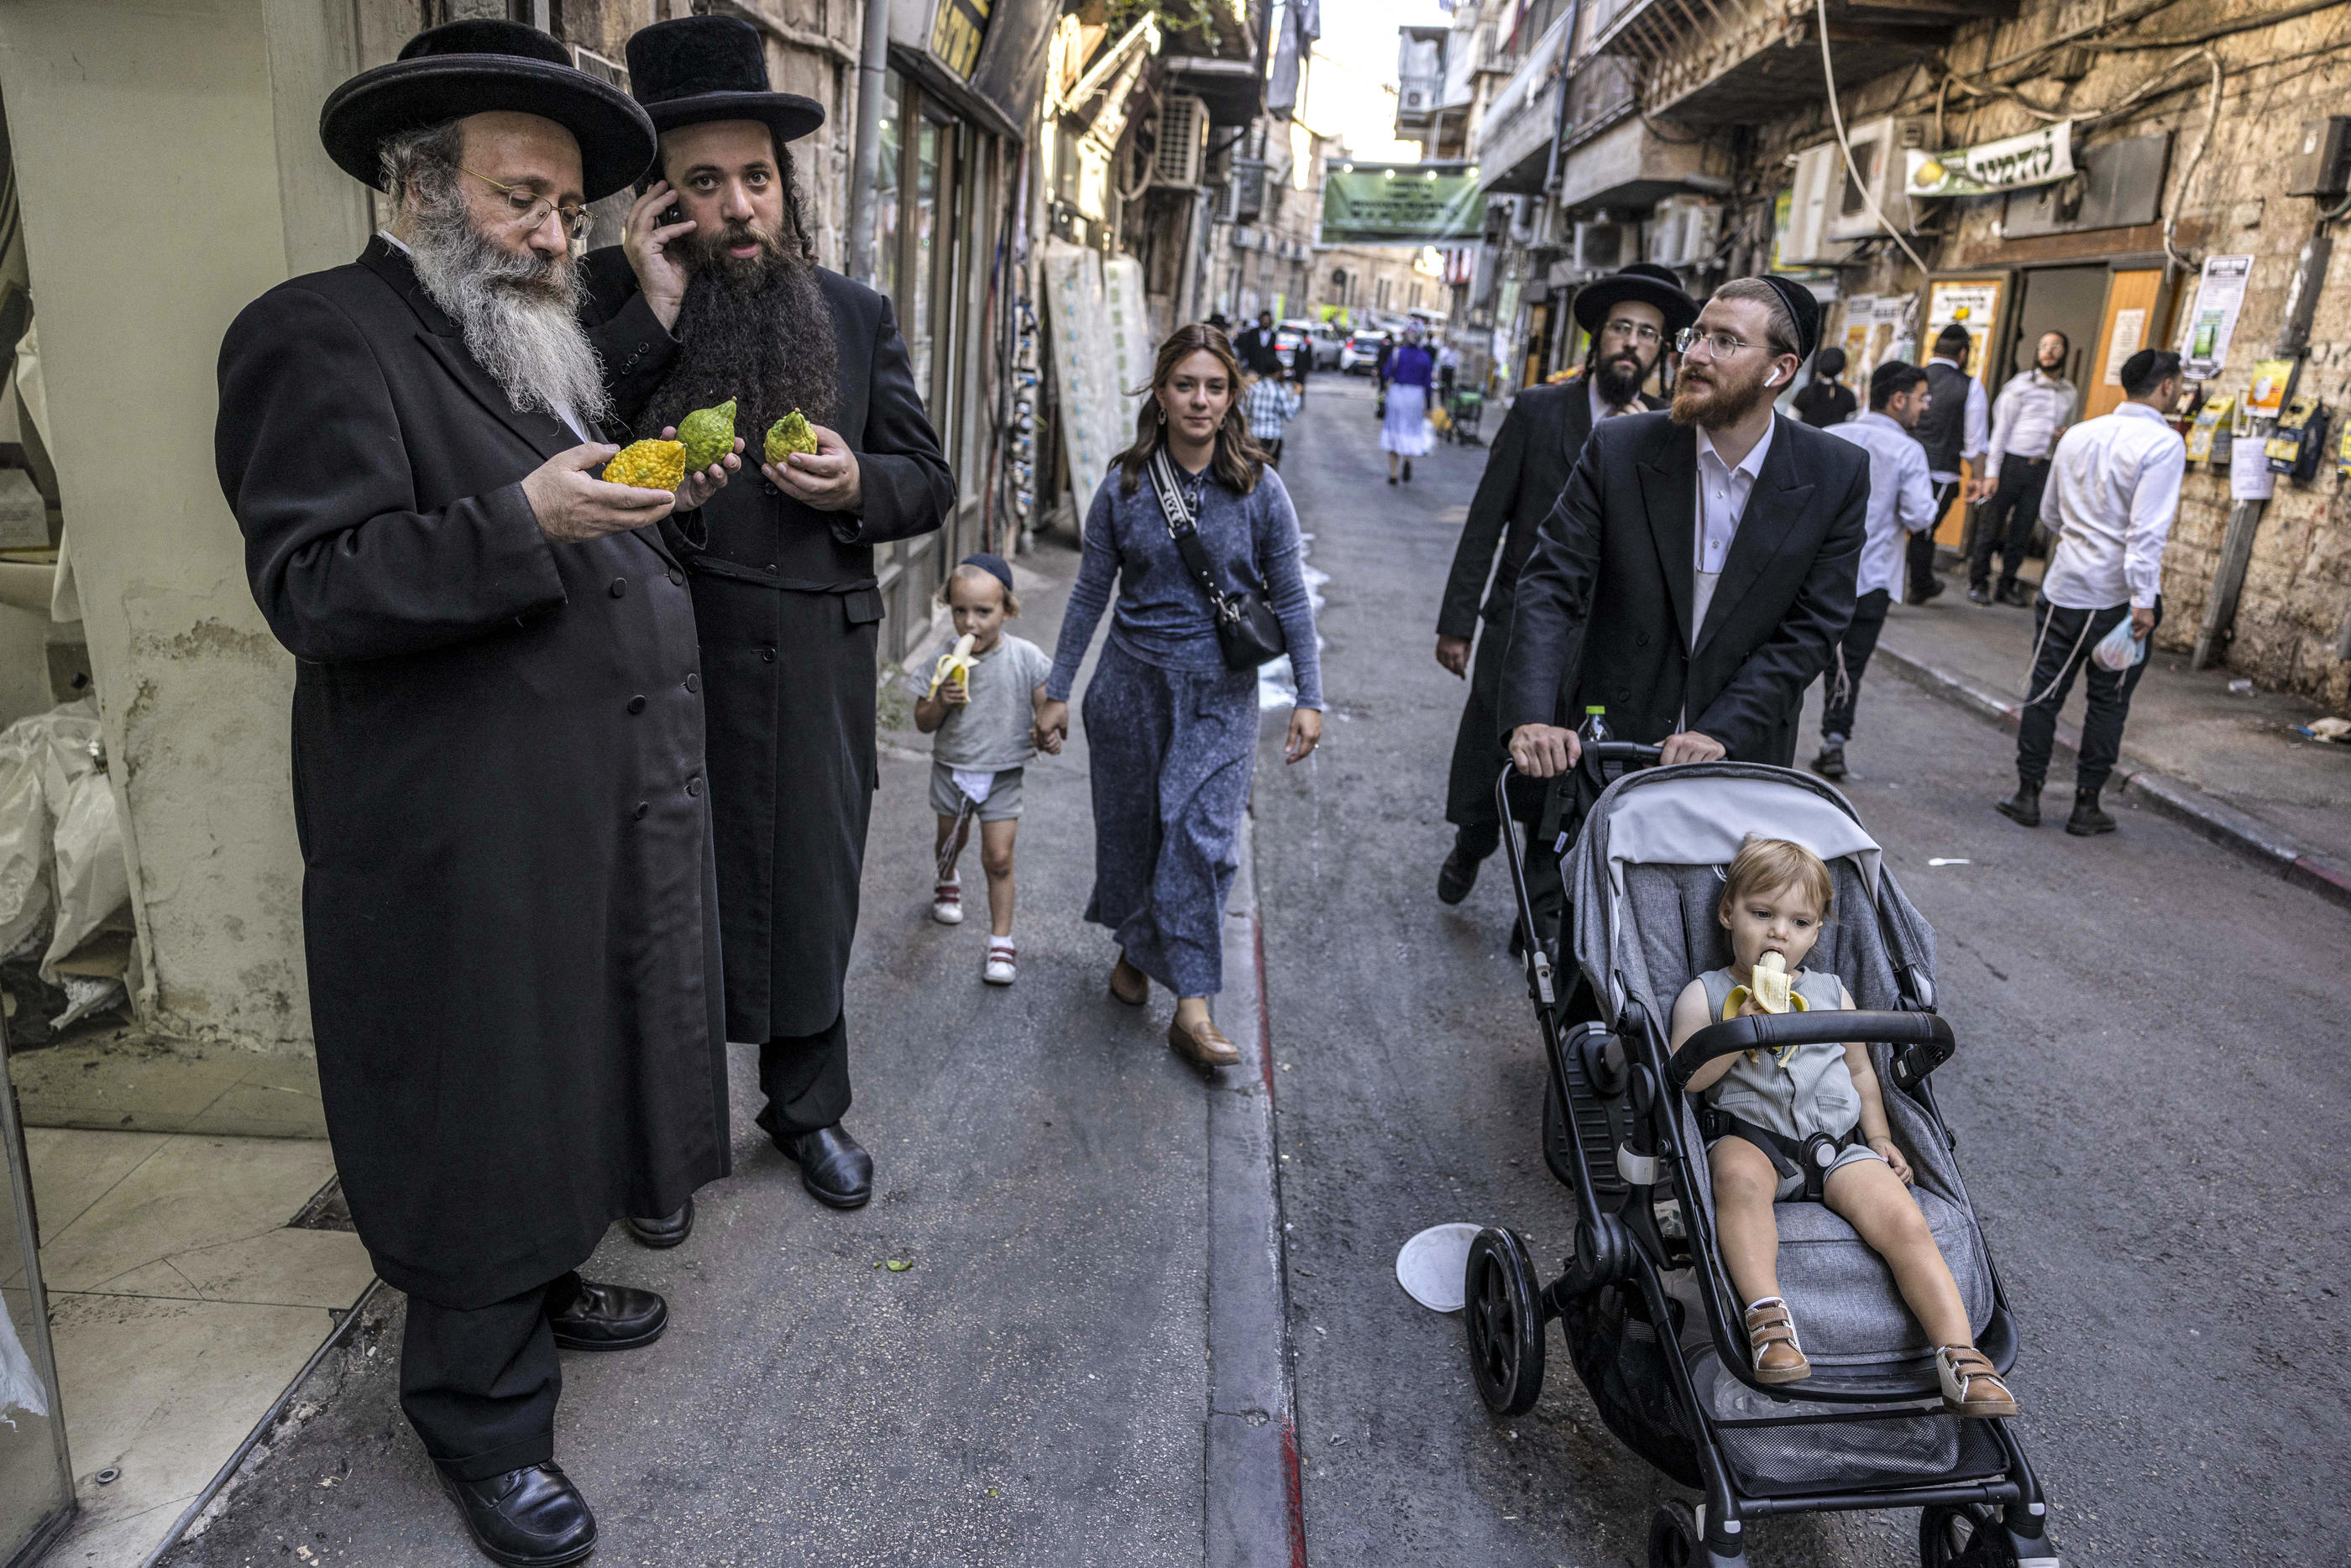 Des juifs ultraorthodoxes inspectent les etrogim (citrons), éléments importants du rituel de la fête de Souccot, dans le quartier de Mea Shearim à Jérusalem, le 27 septembre 2023. AFP/Kahana Menahem